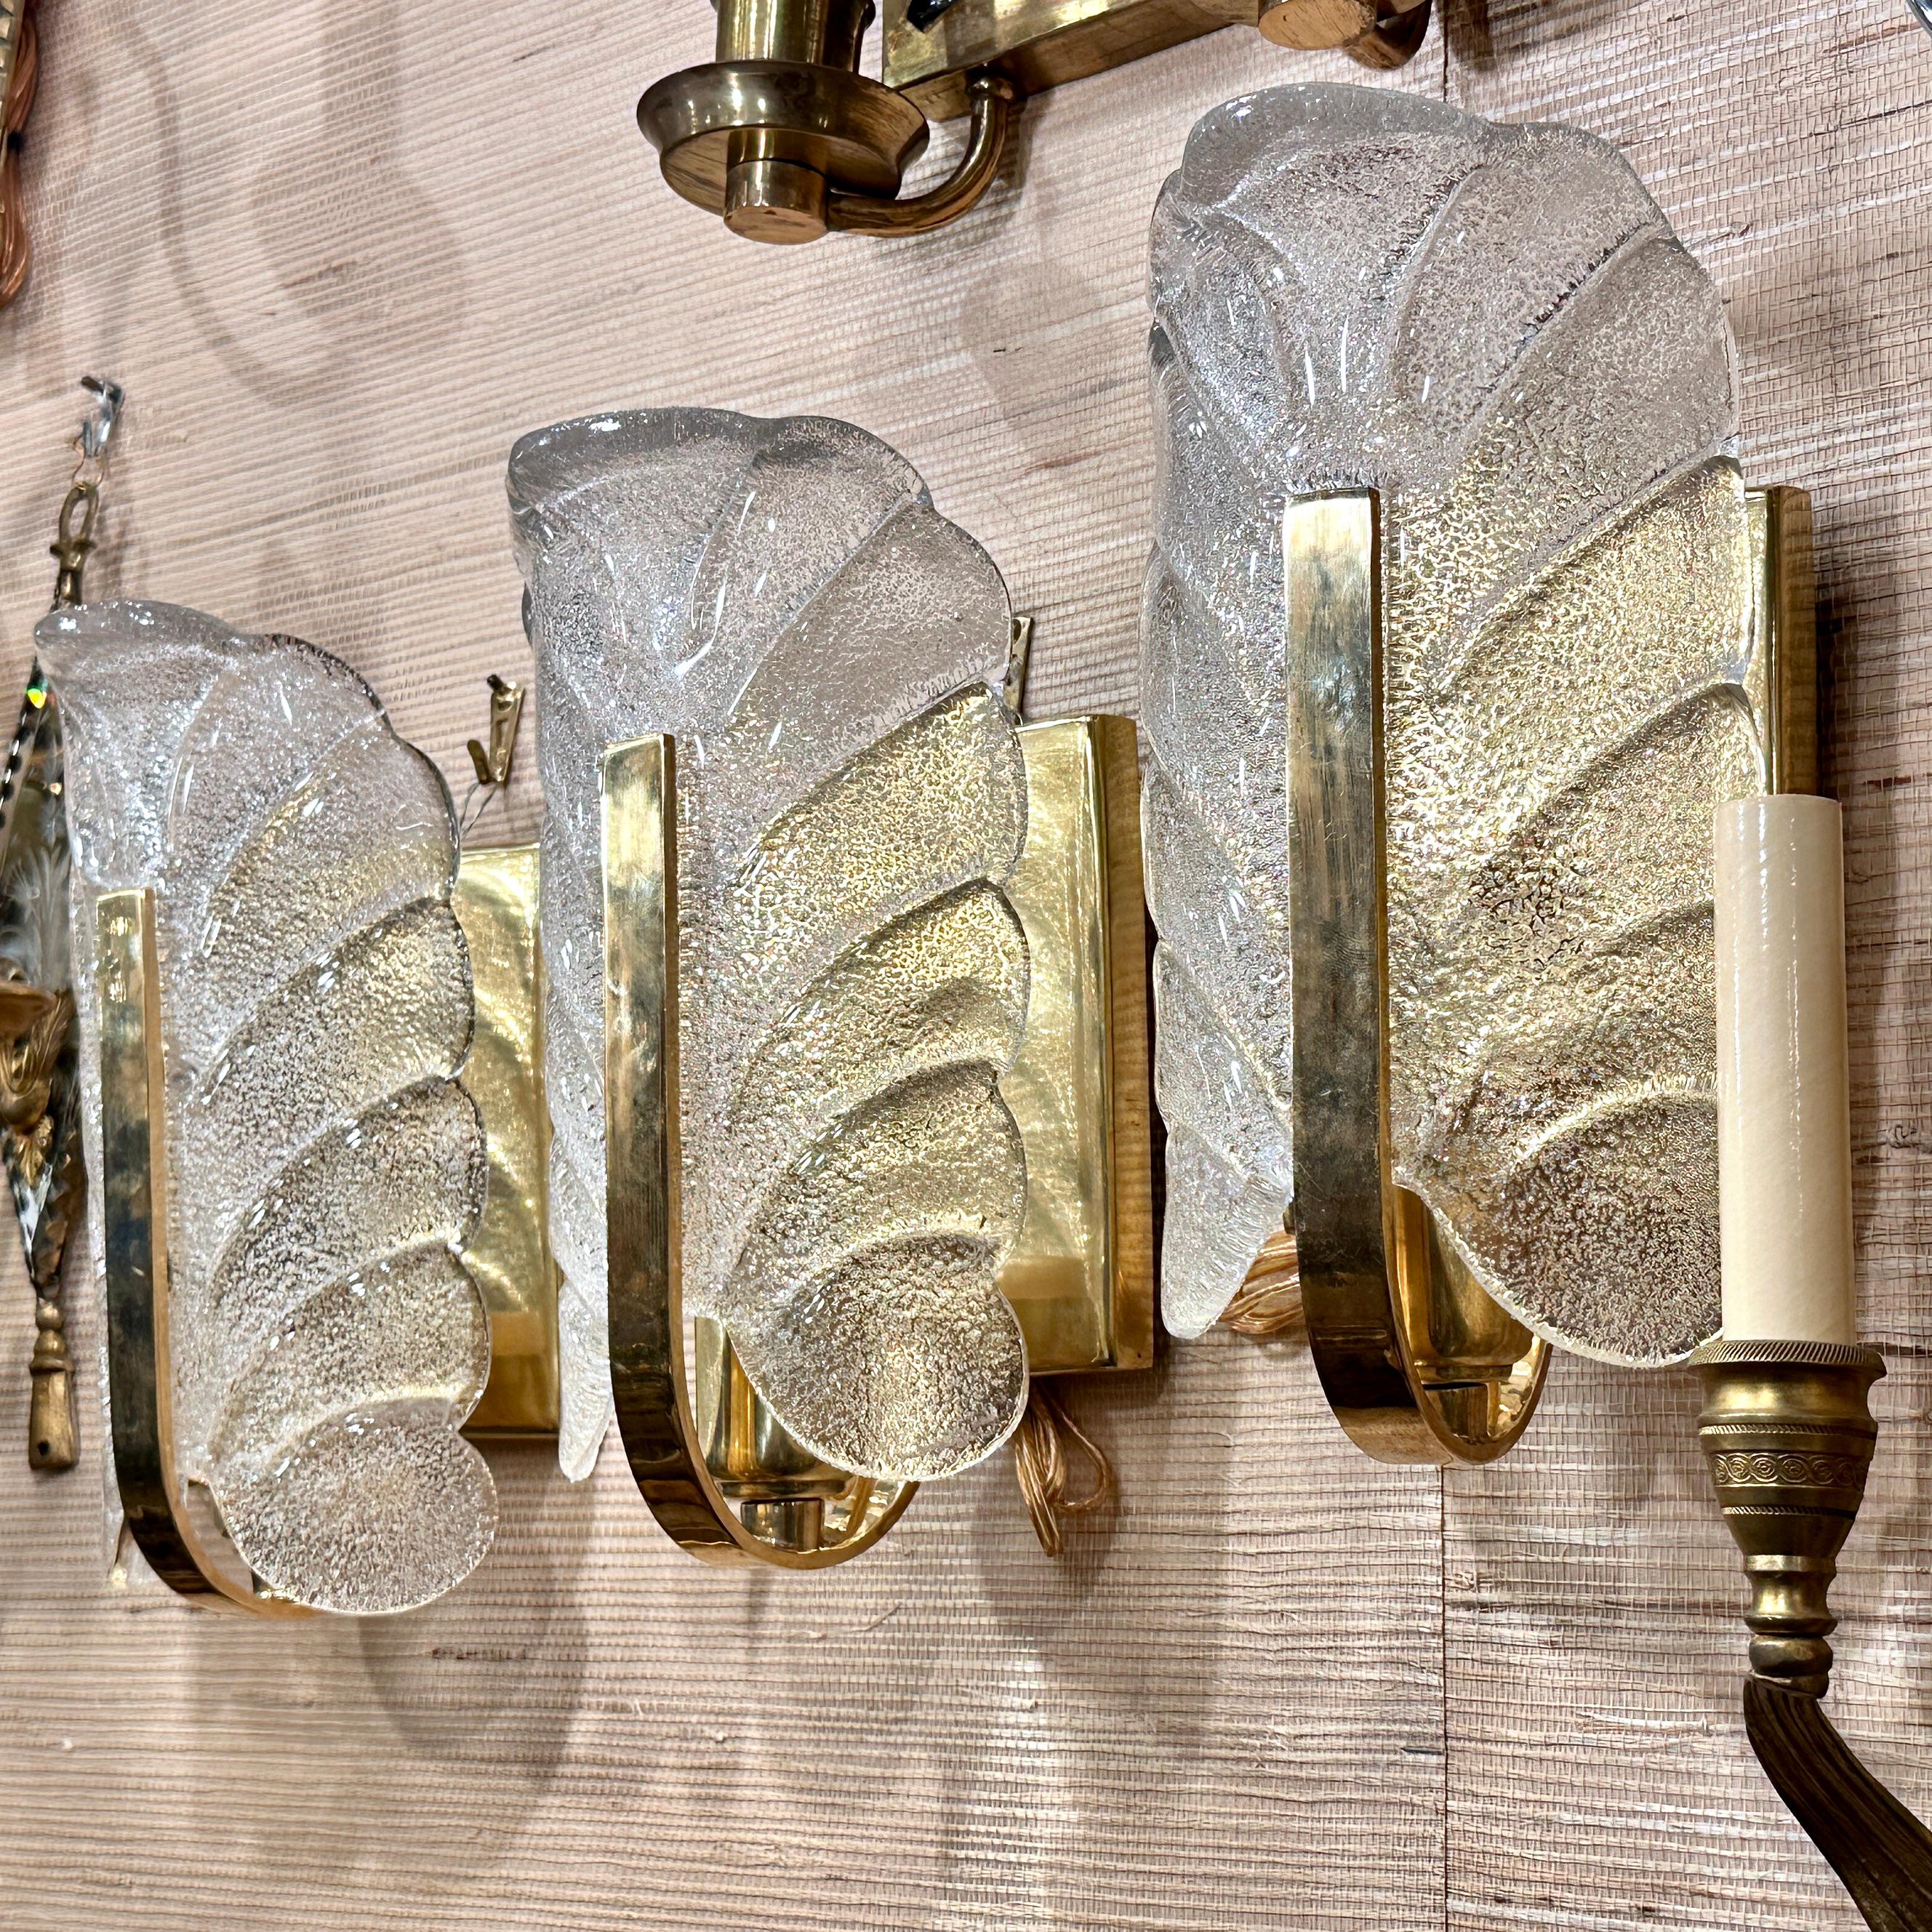 Satz von sechs italienischen Murano-Glasleuchten aus den 1960er Jahren mit Bronzegehäuse. Verkauft pro Paar.

Abmessungen:
Höhe: 10